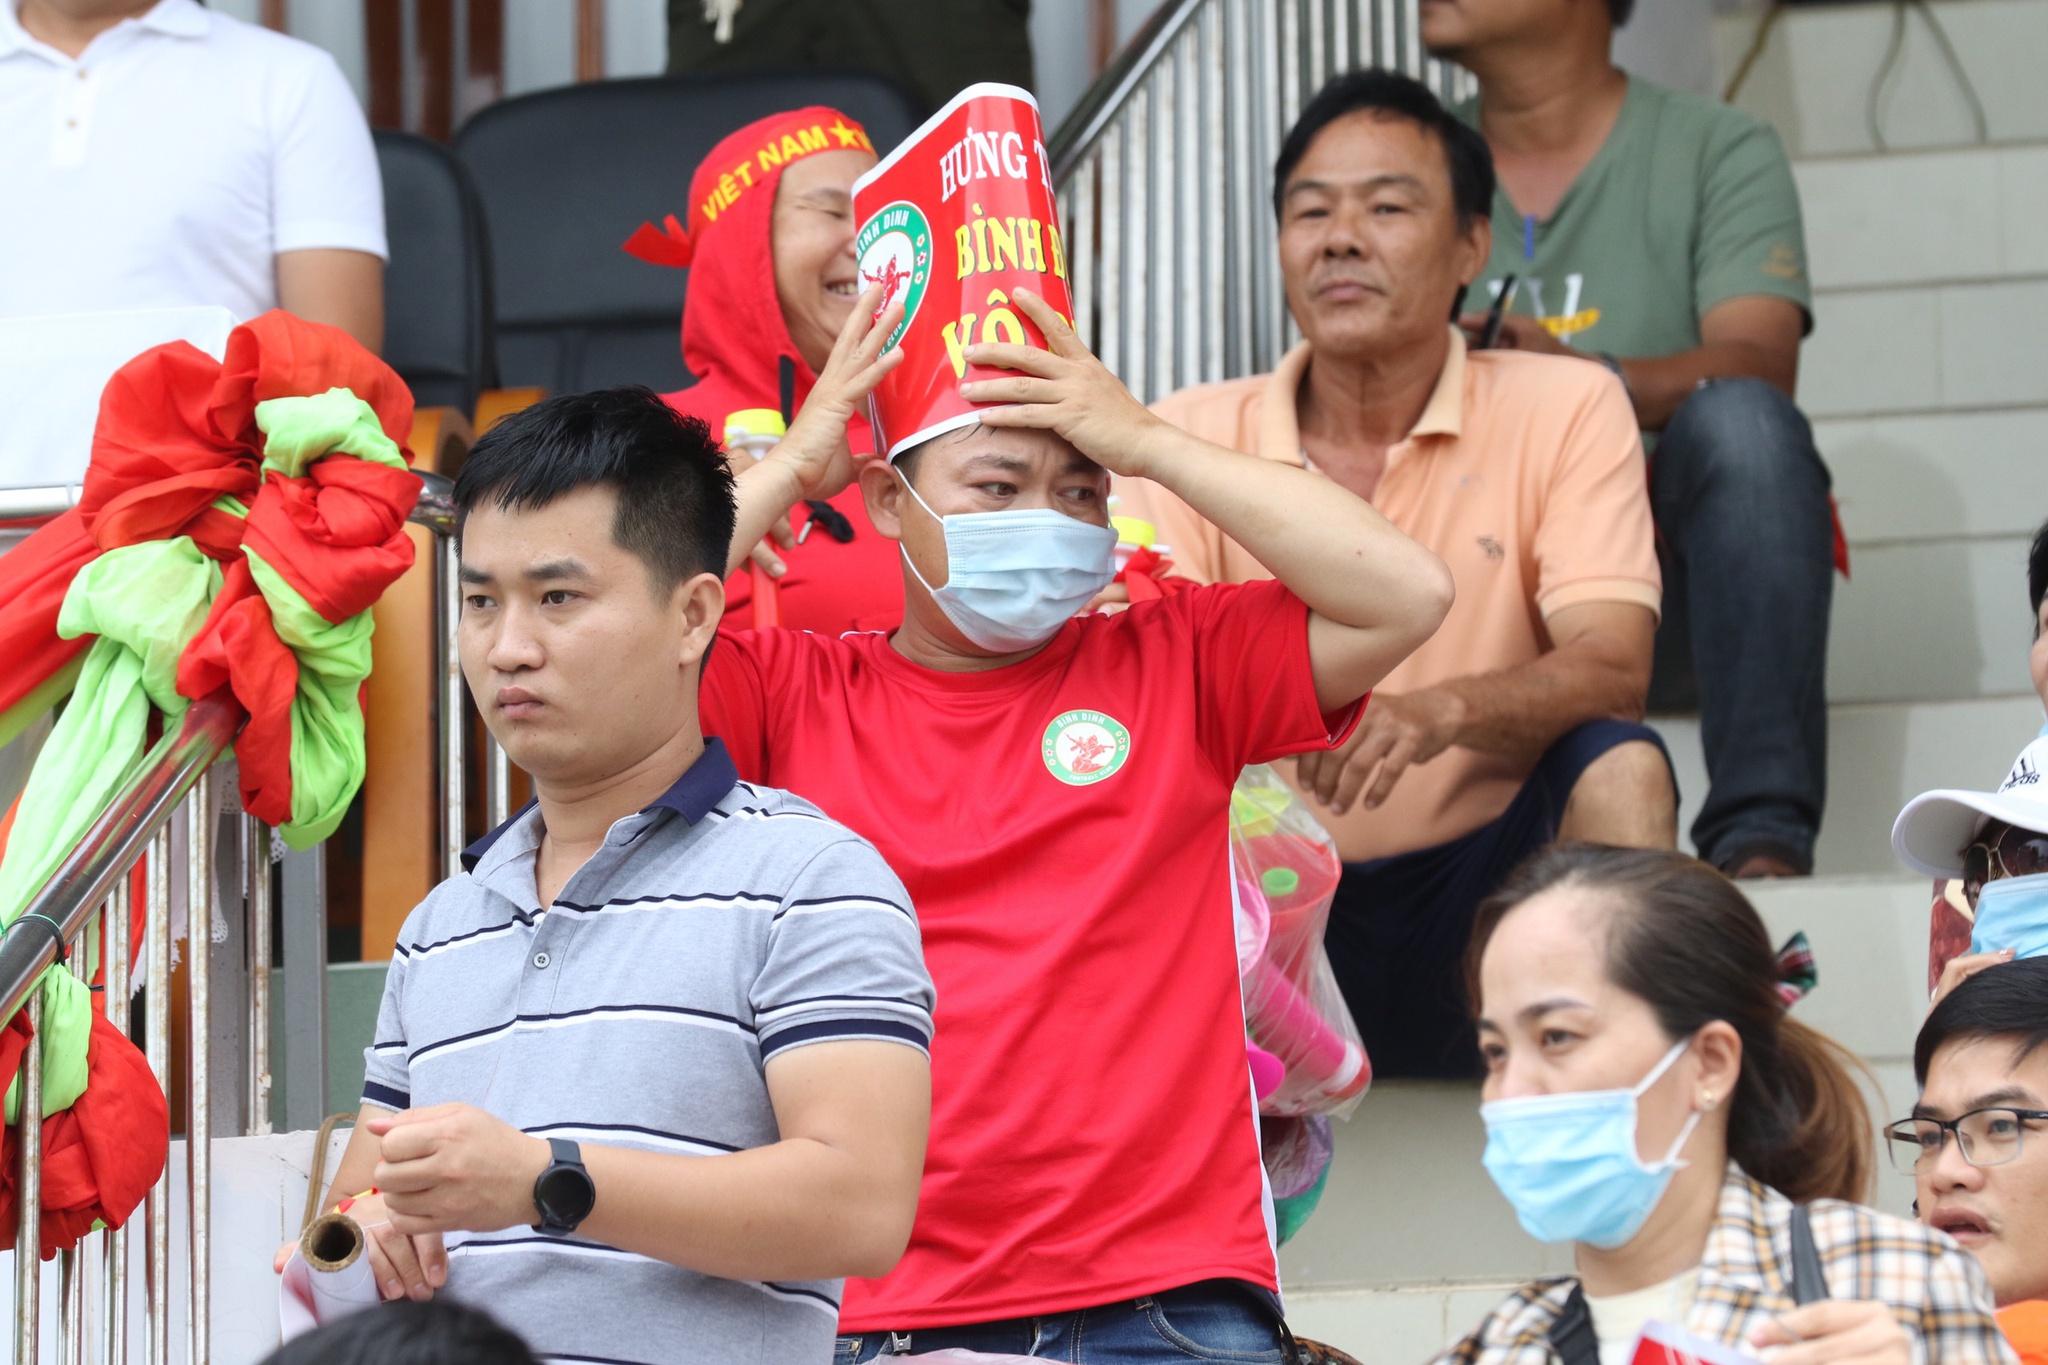 Kết quả suất lên hạng V-League: Chúc mừng CLB Bình Định, tiếc cho Bà Rịa - Vũng Tàu! - ảnh 2